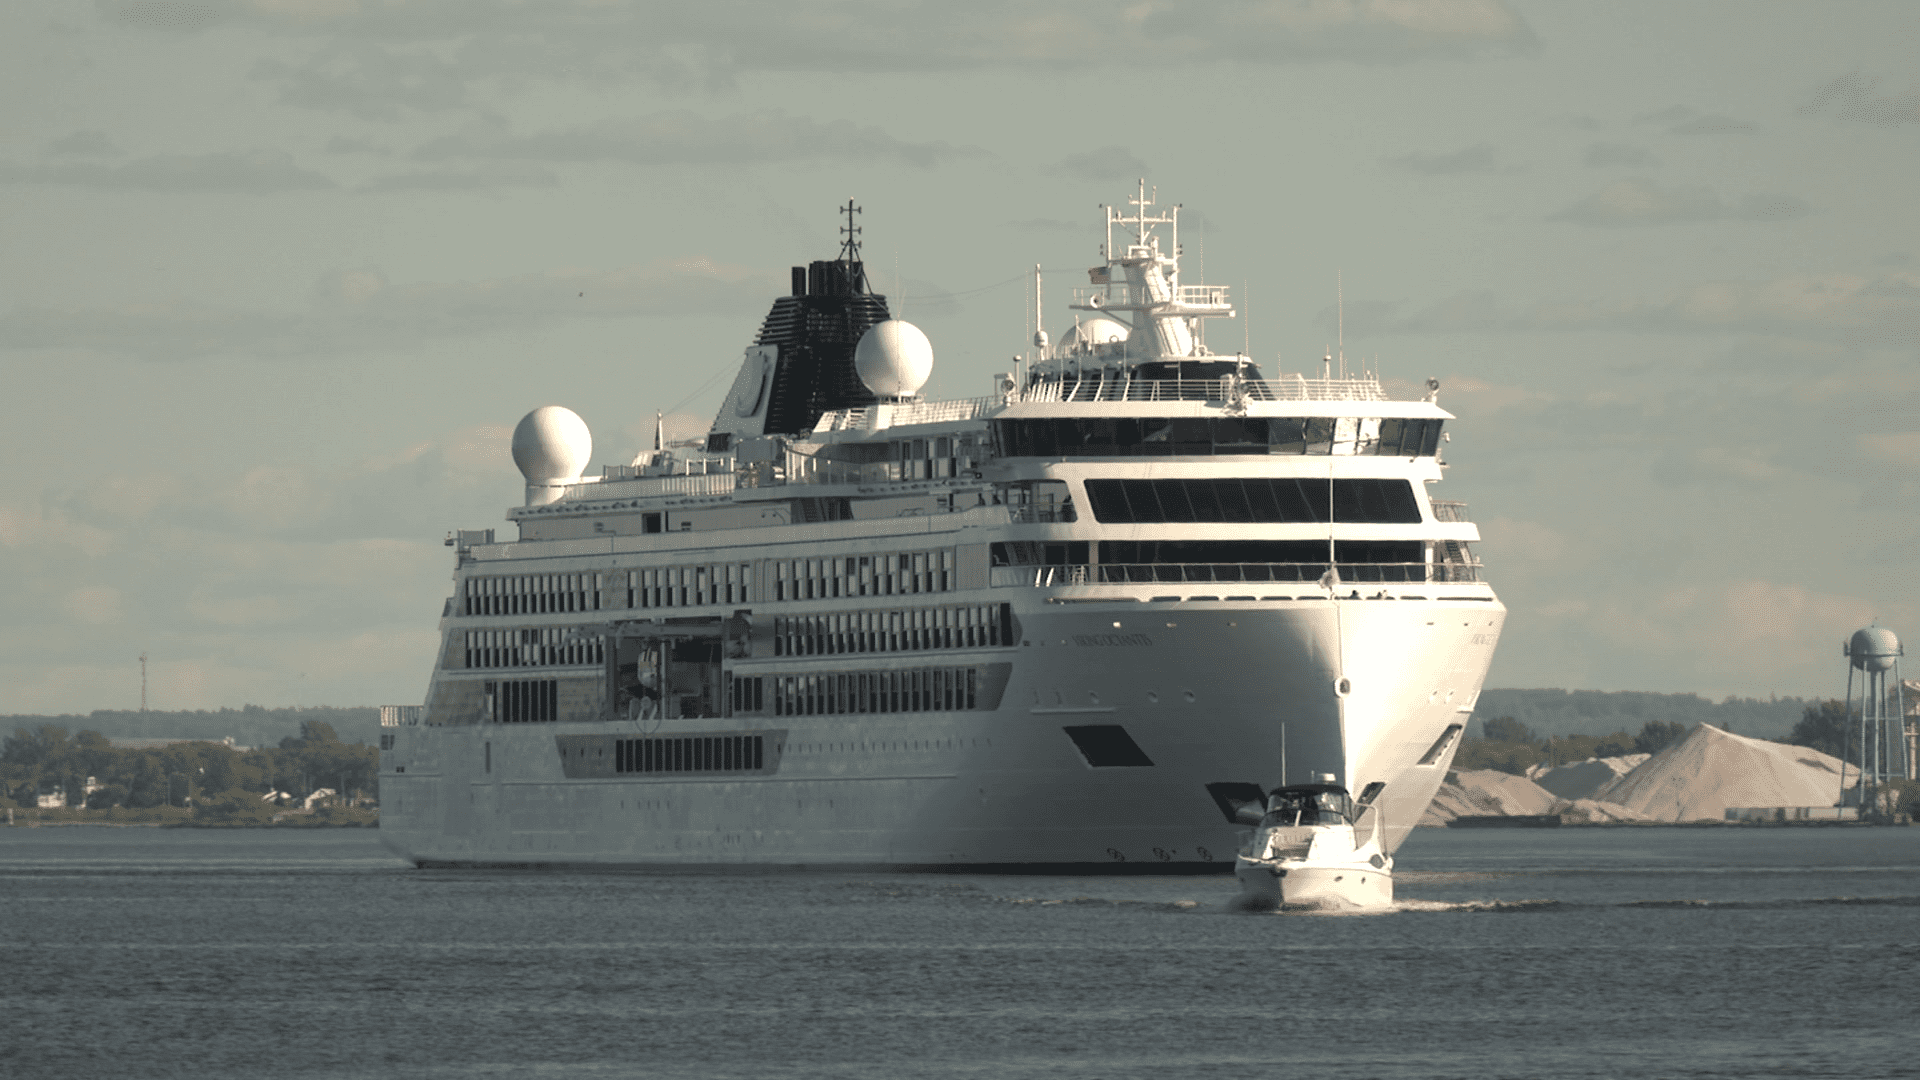 Close-up of Viking Octantis cruise ship